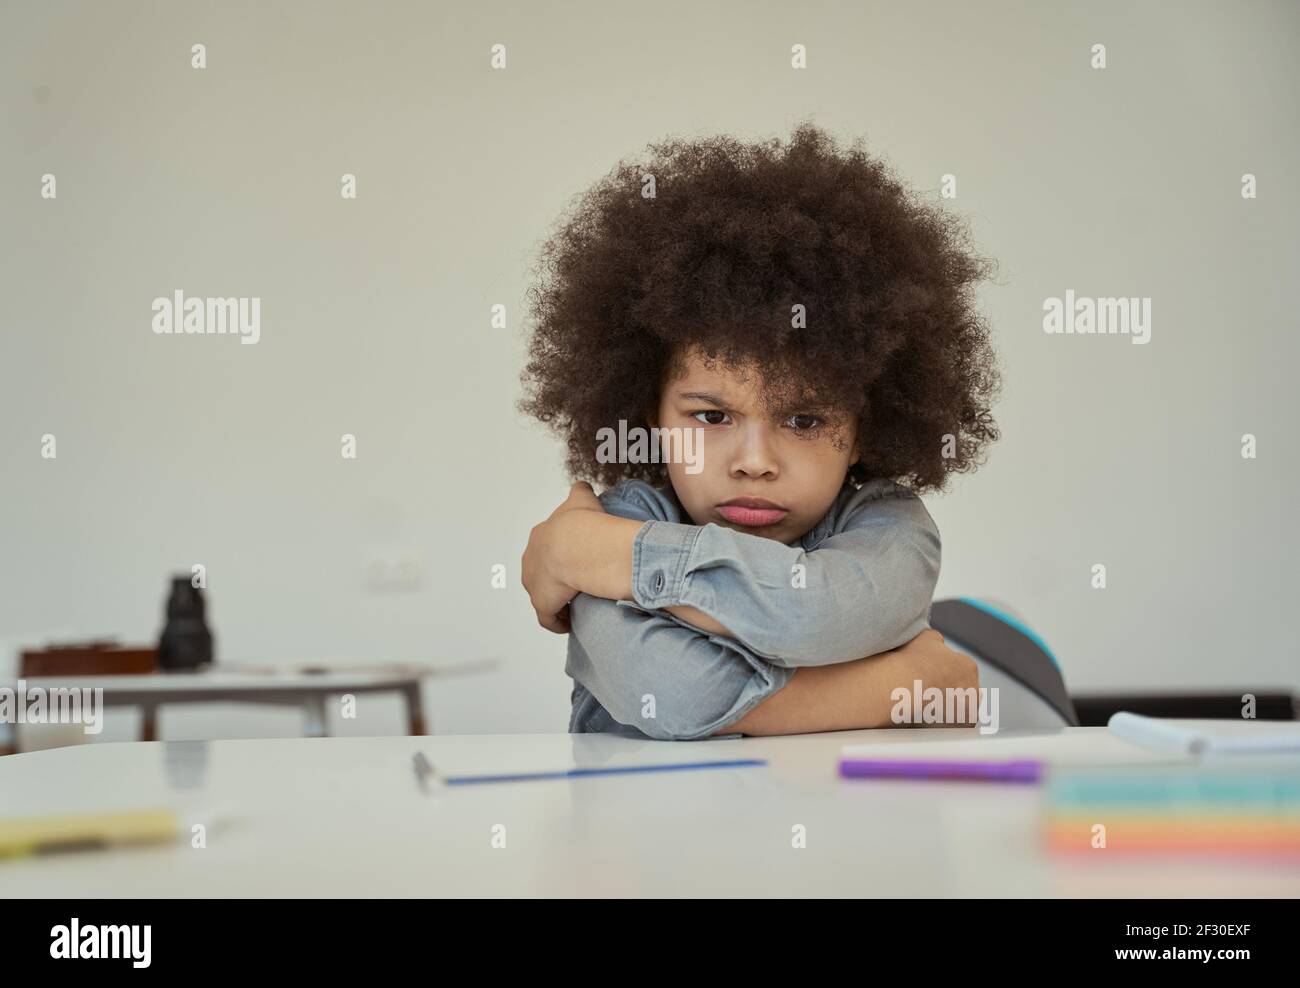 Verärgerte kleine Schuljunge mit afro Haar sah ärgerlich, runzelig, während sitzen mit Armen gekreuzt am Tisch in der Grundschule Klassenzimmer Stockfoto